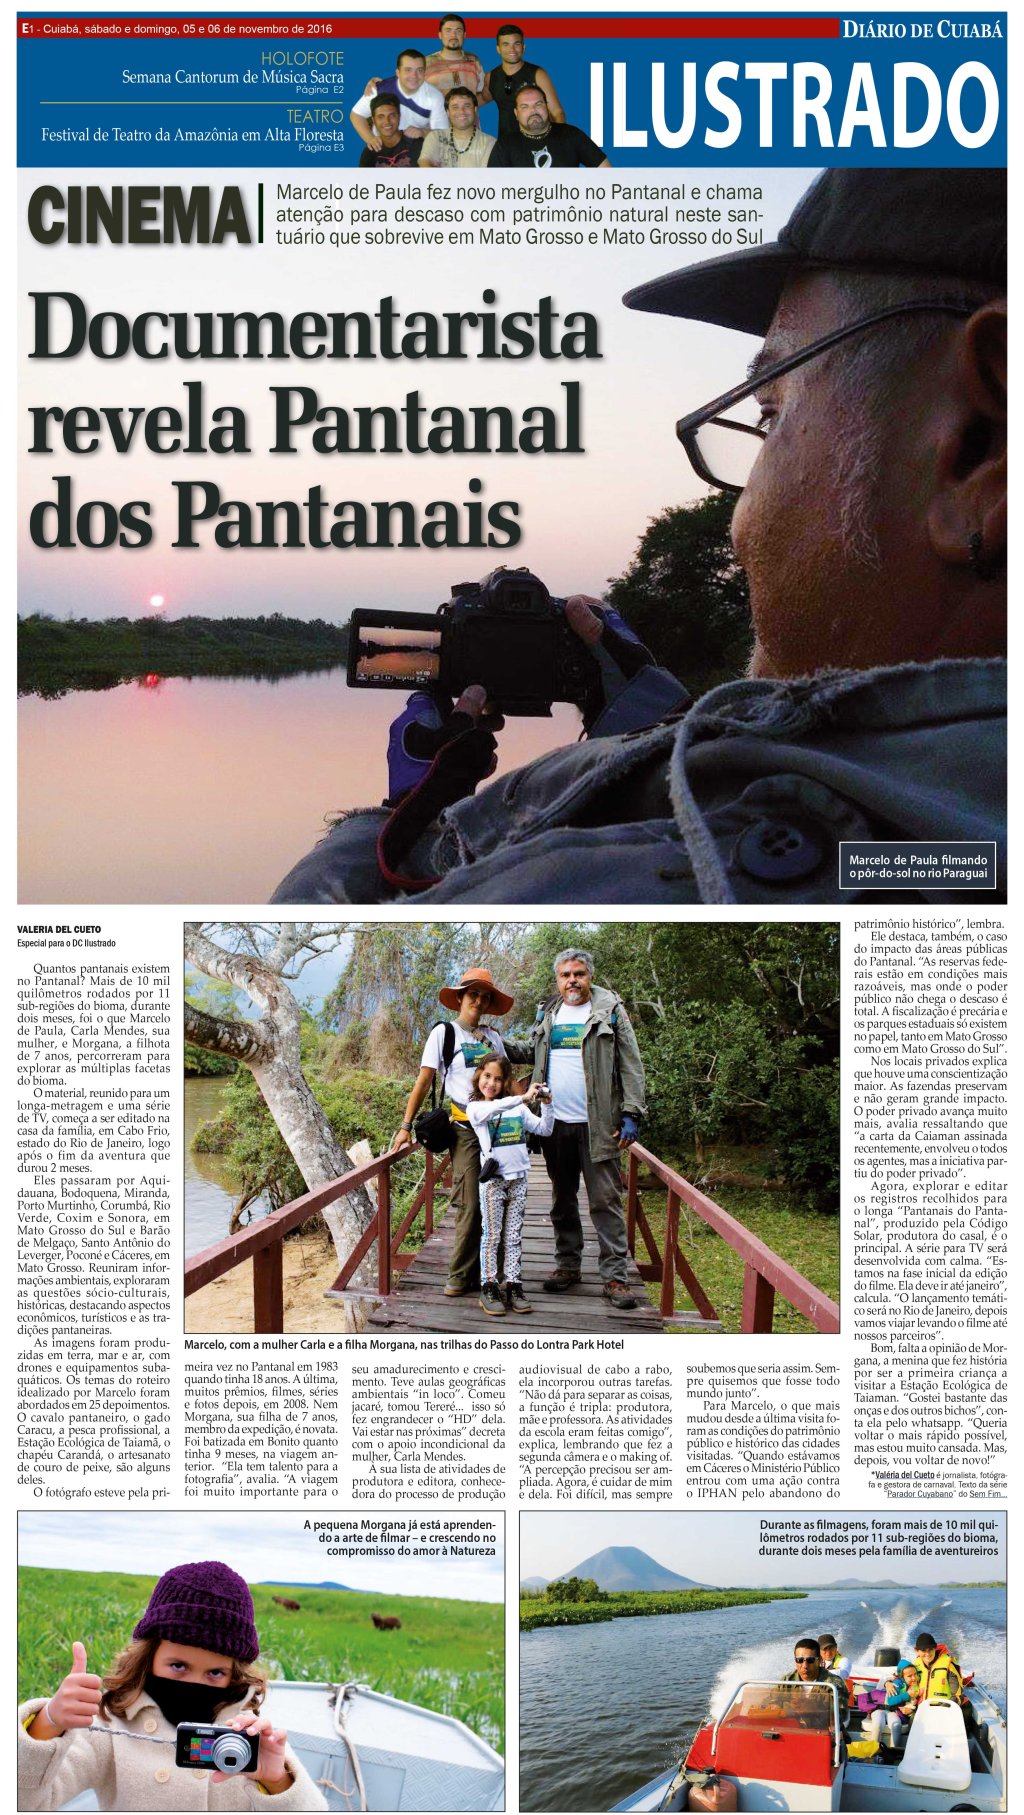 Documentarista revela Pantanal dos Pantanais